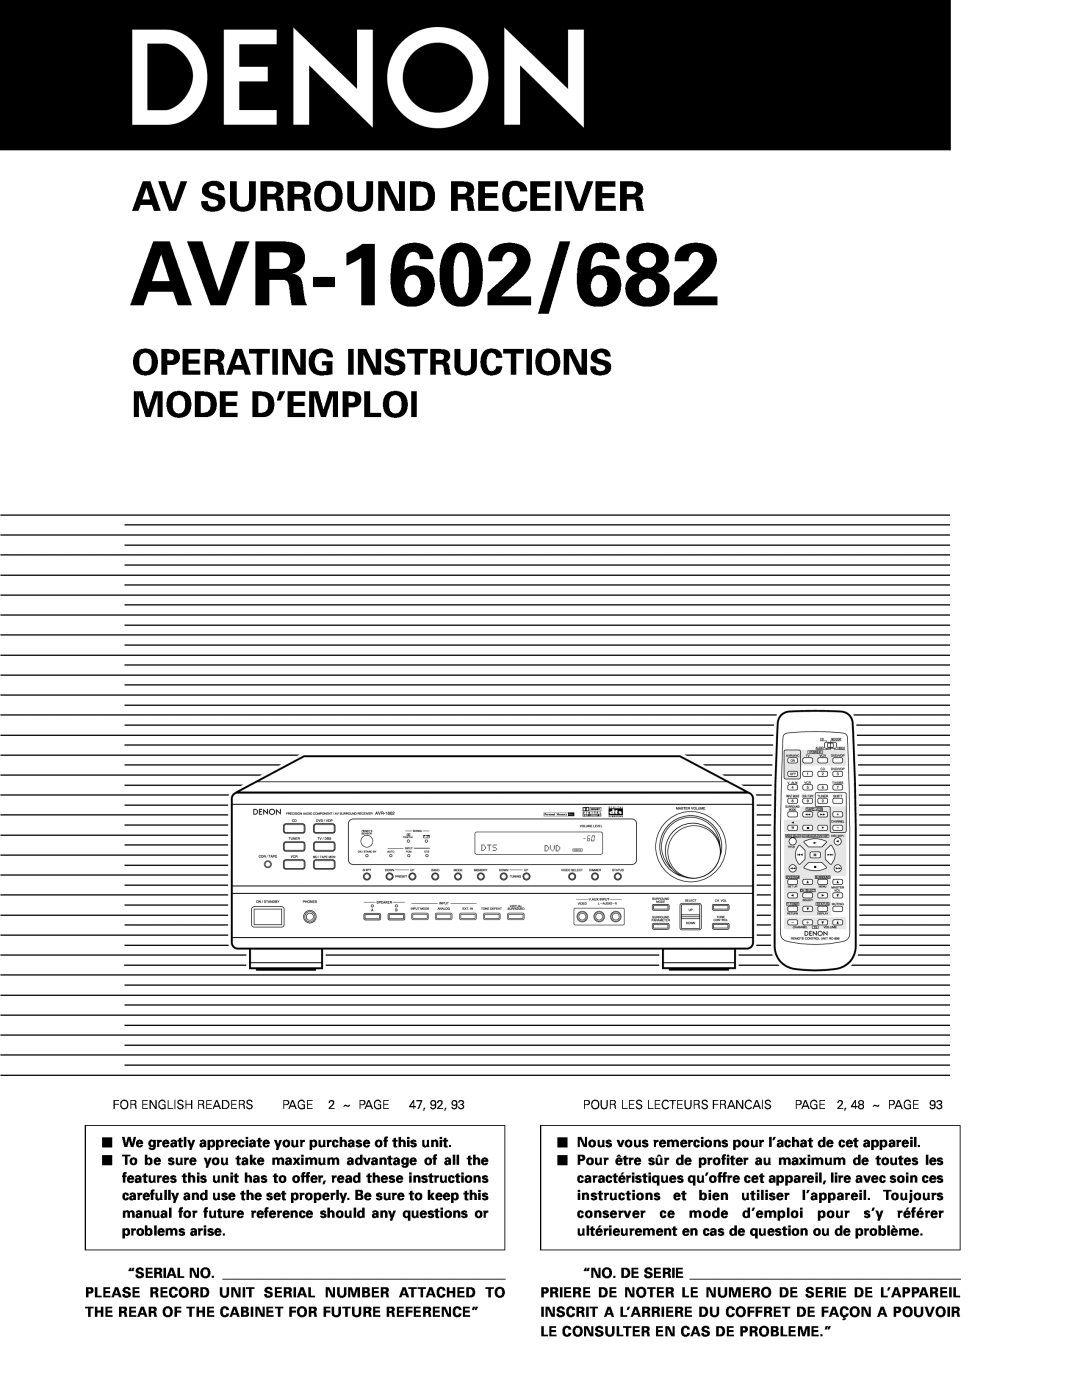 Denon AVR-682 manual Operating Instructions Mode D’Emploi, AVR-1602/682, Av Surround Receiver, “Serial No, “No. De Serie 